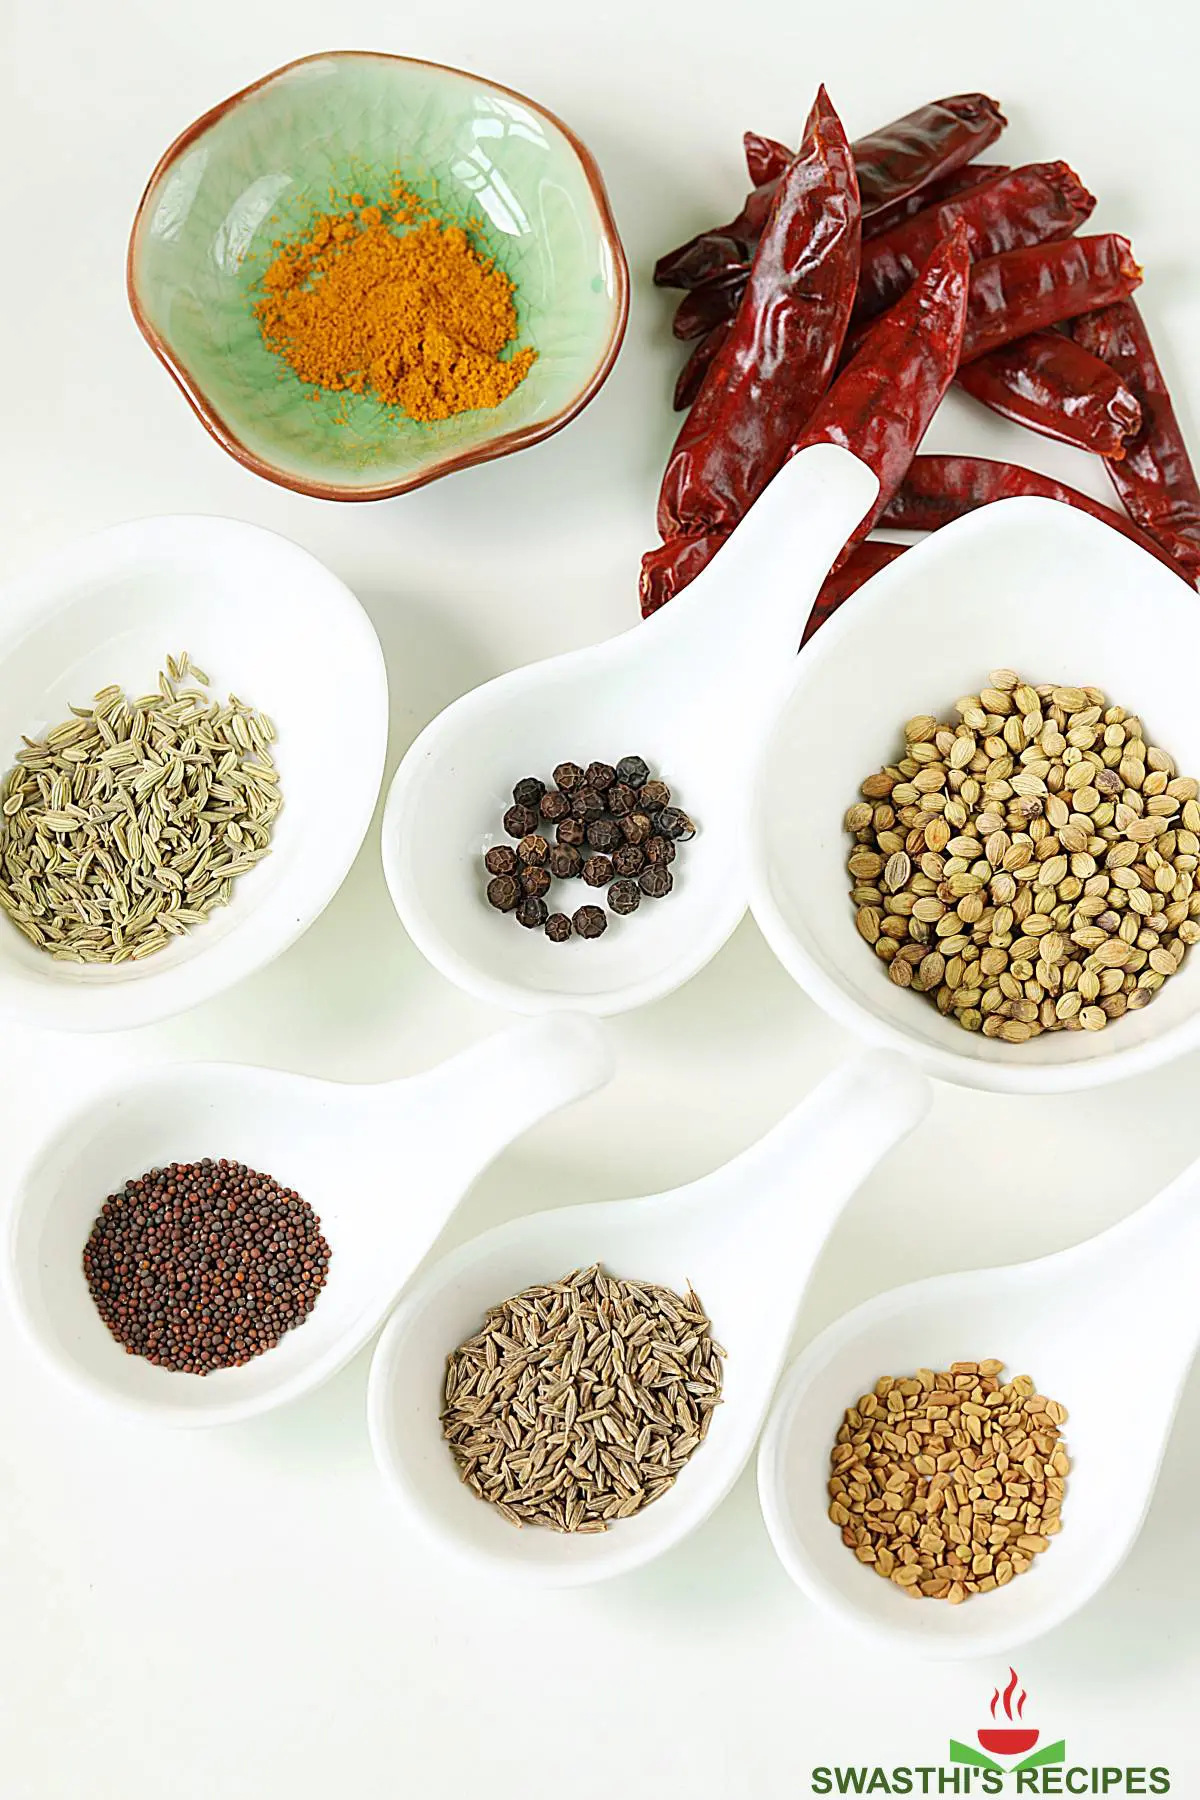 Basic ingredients to make curry powder